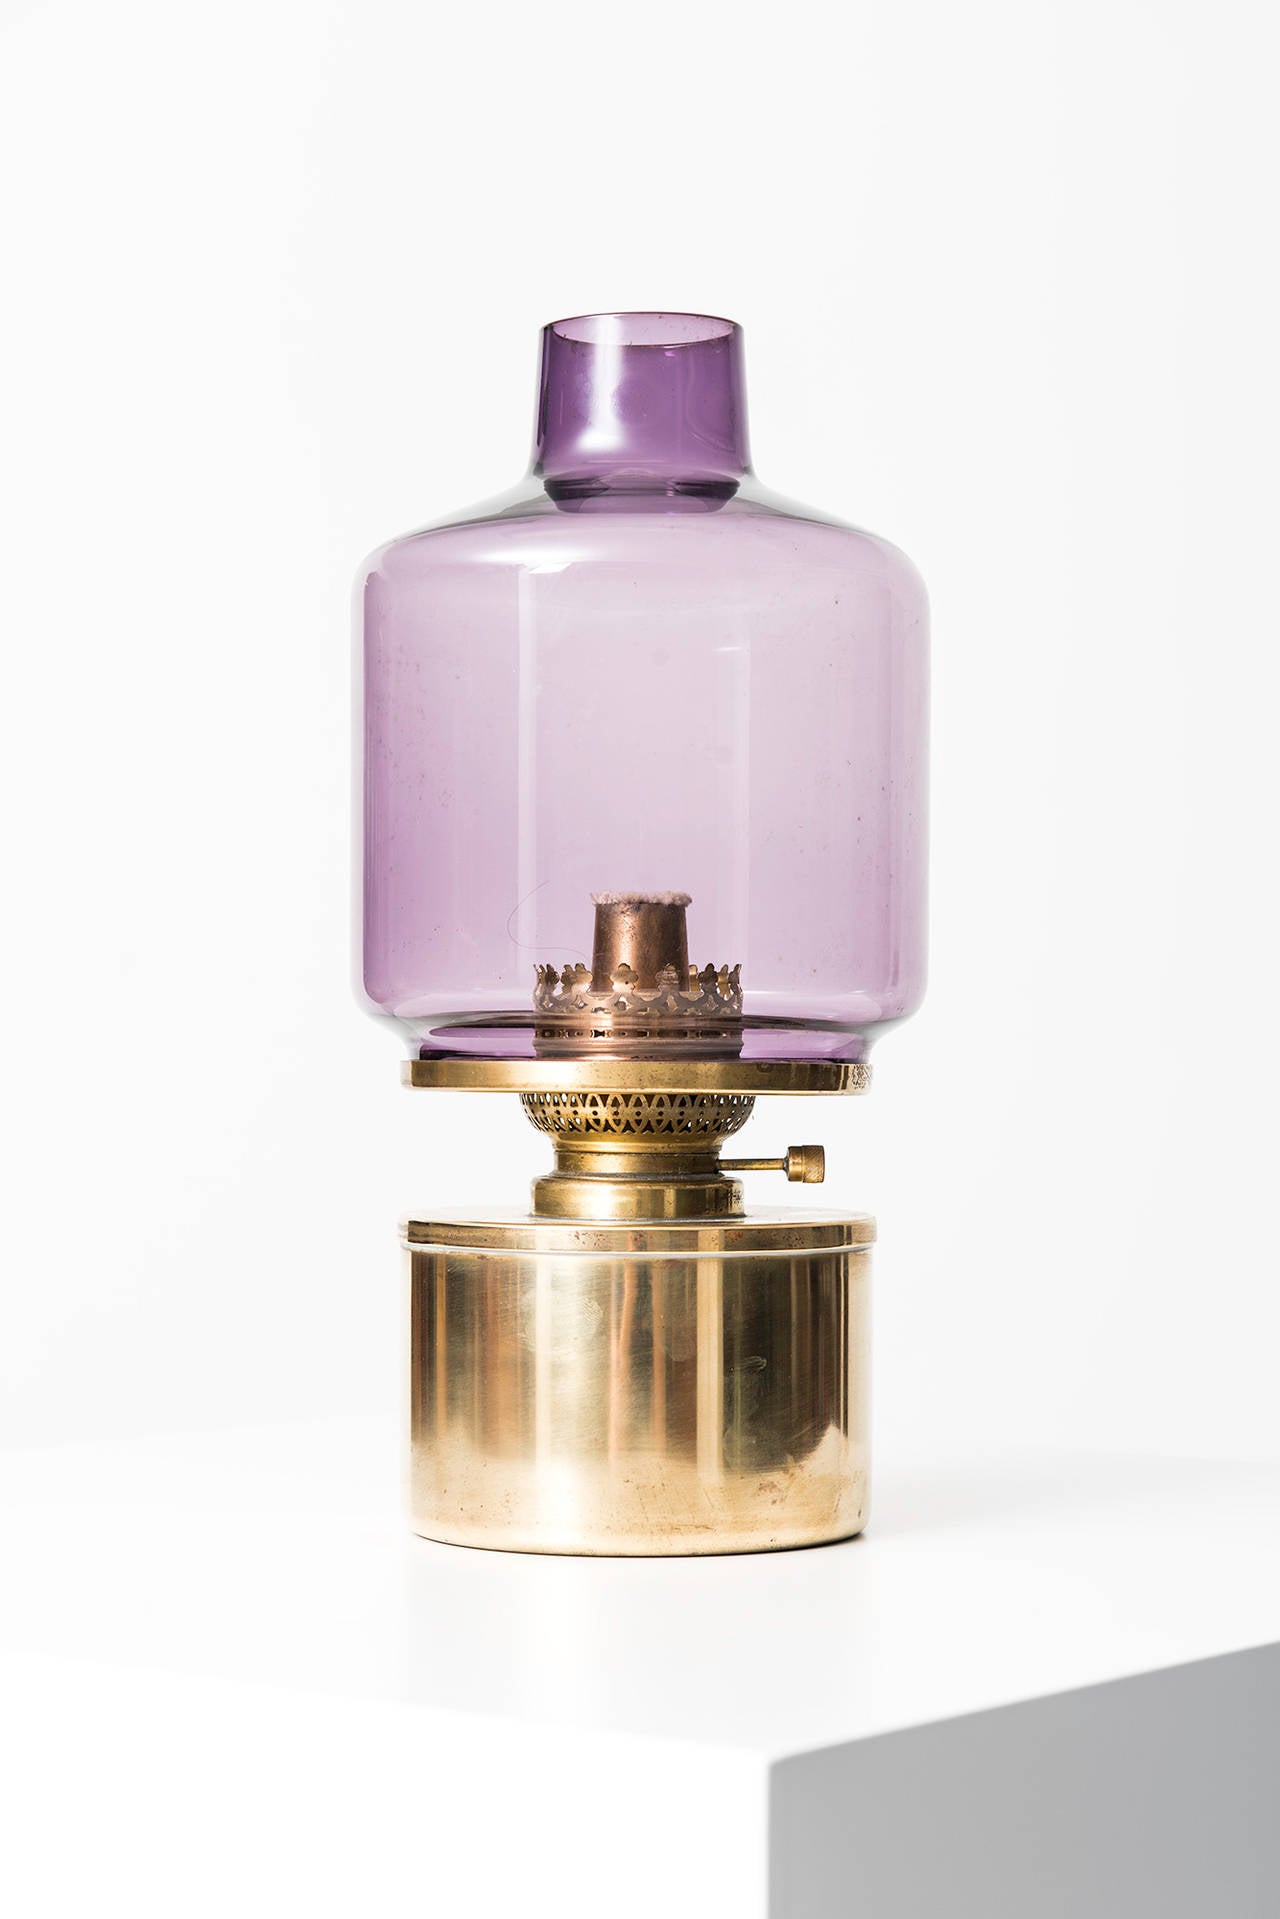 Rare kerosene / oil lamp model L-47 designed by Hans-Agne Jakobsson. Produced by Hans-Agne Jakobsson in Markaryd, Sweden.